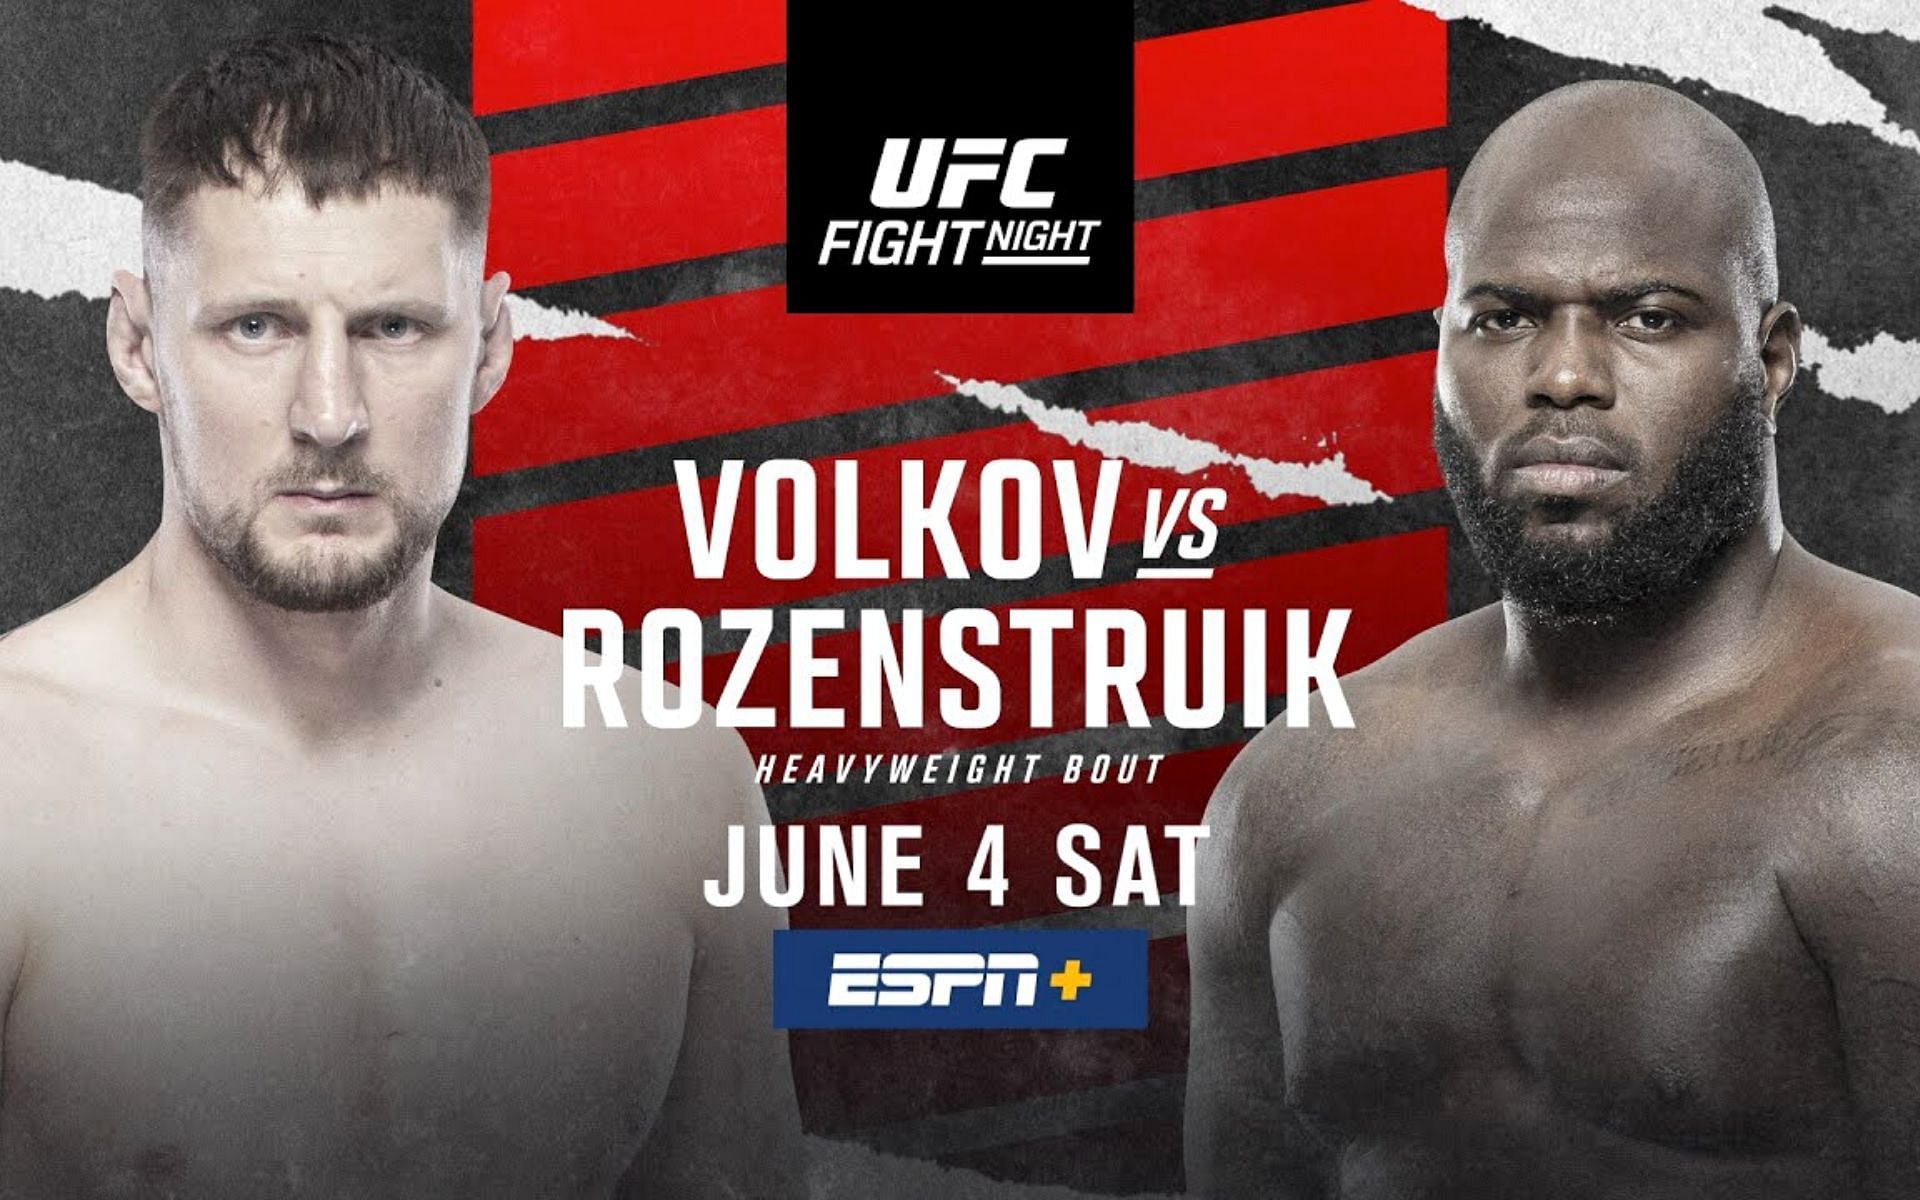 UFC Fight Night: Volkov vs. Rozenstruik [Image courtesy: UFC via YouTube]